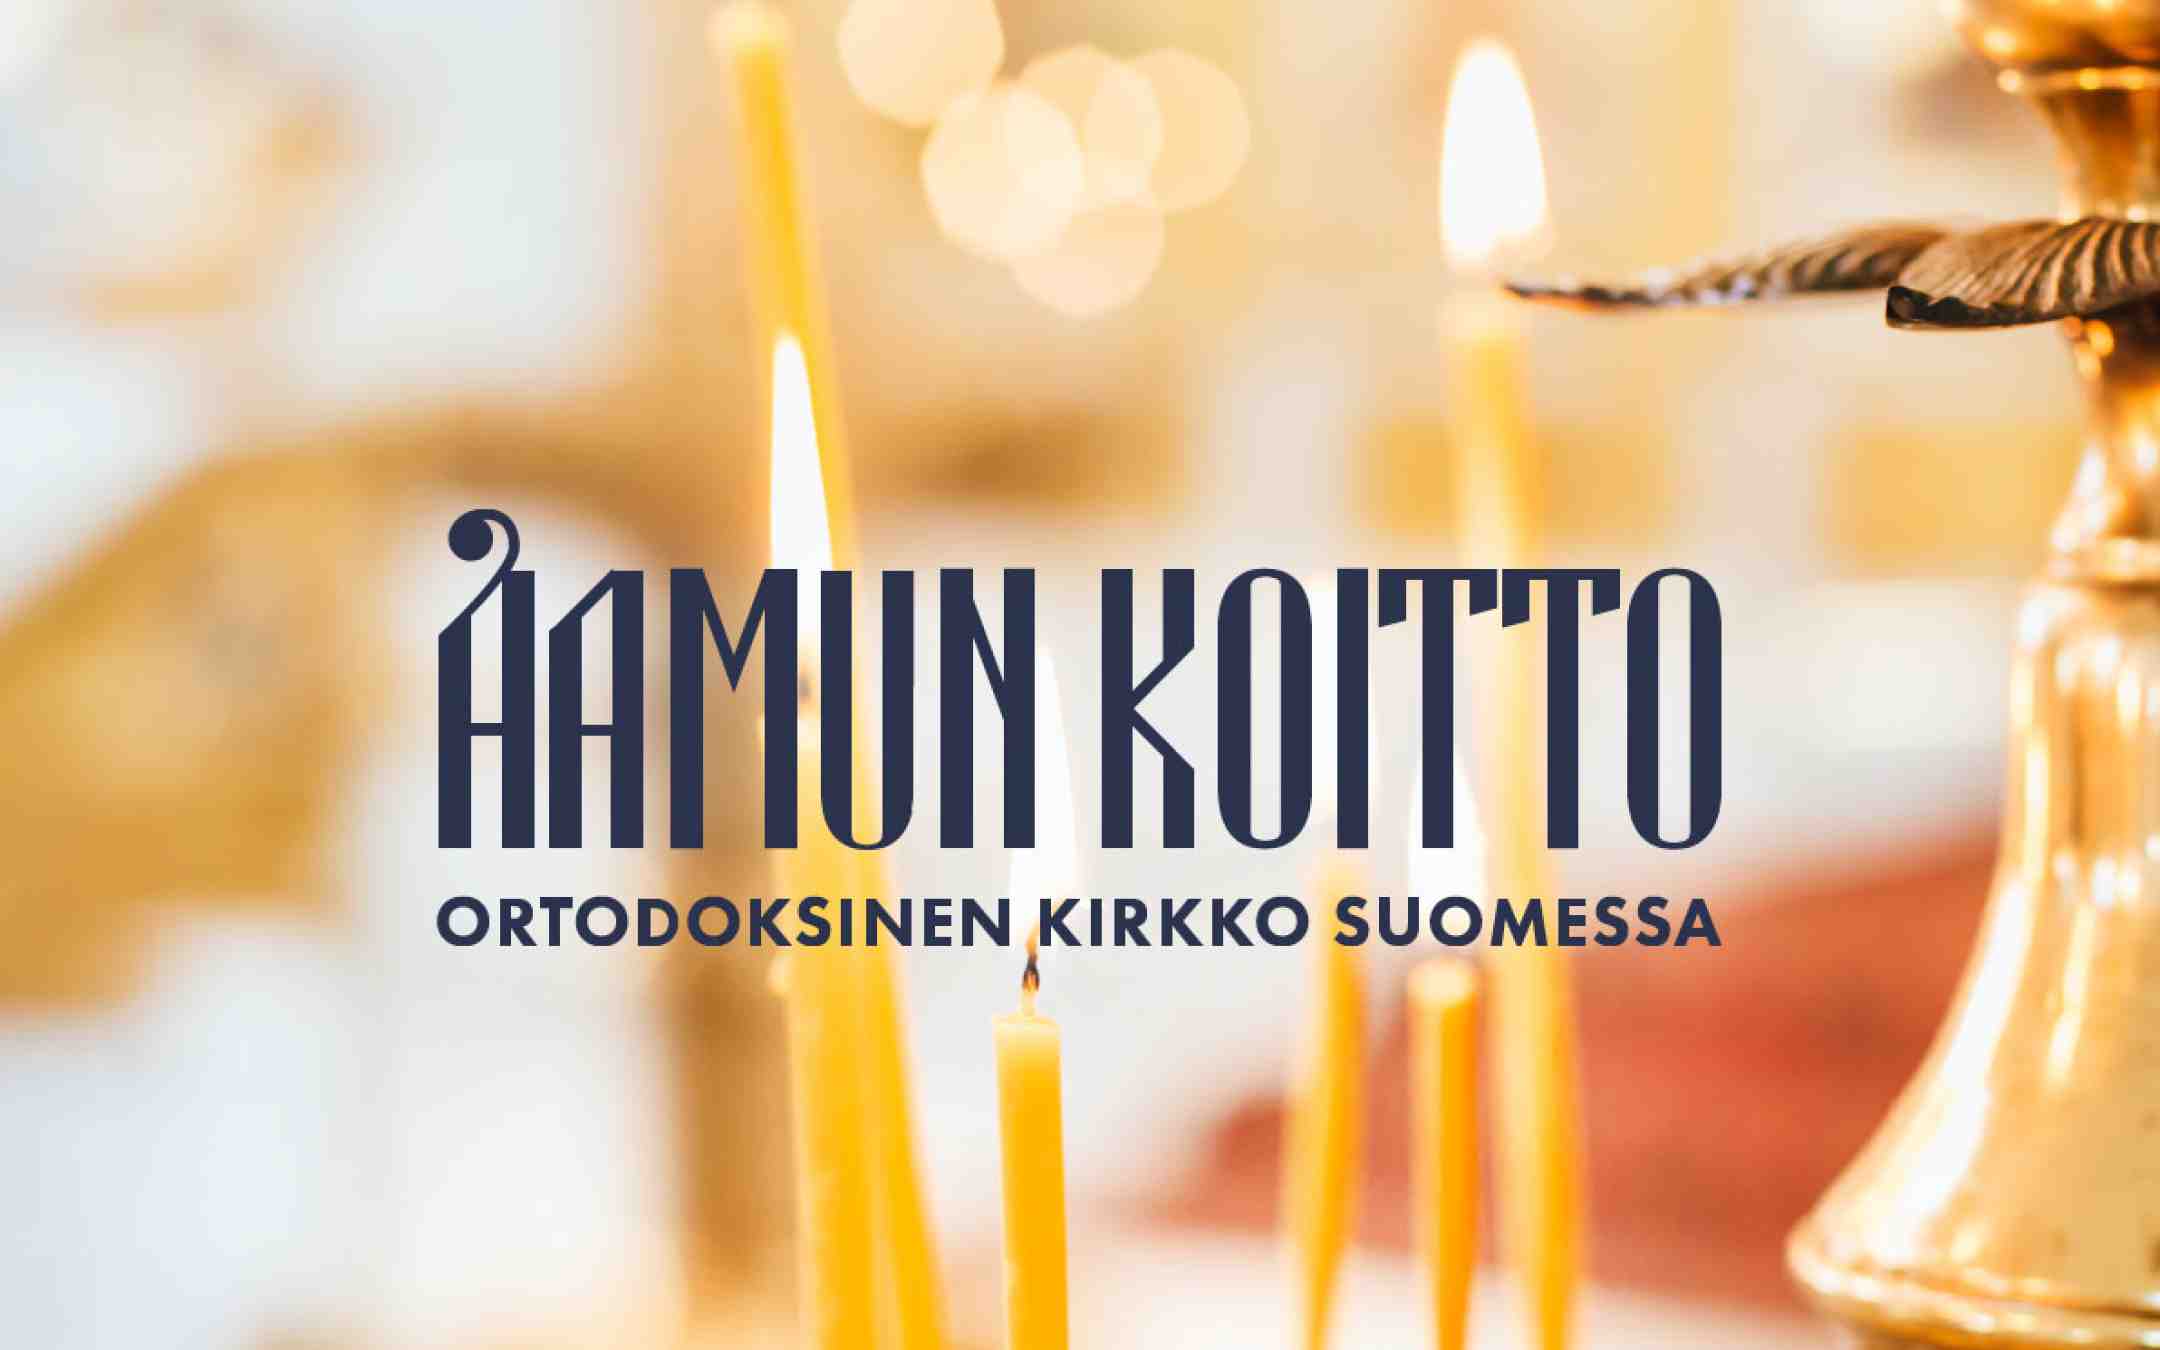 Suomen ortodoksisen kirkon Aamun Koitto -lehden nimiö